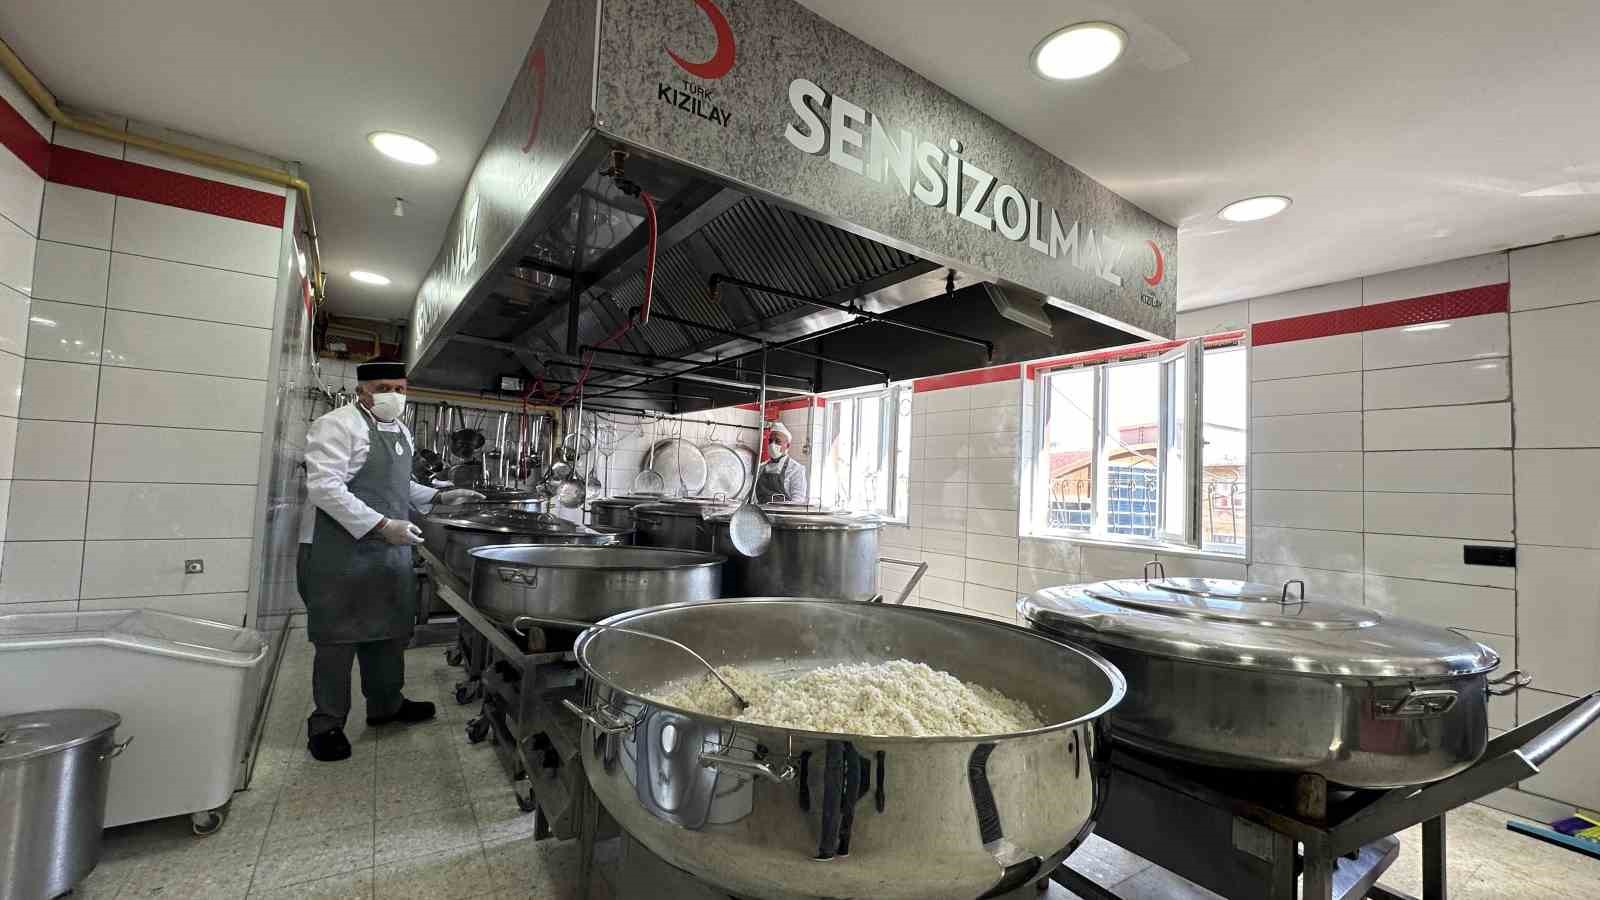 Kızılay’dan, Ankara’da her gün 3 bin aileye sıcak yemek
